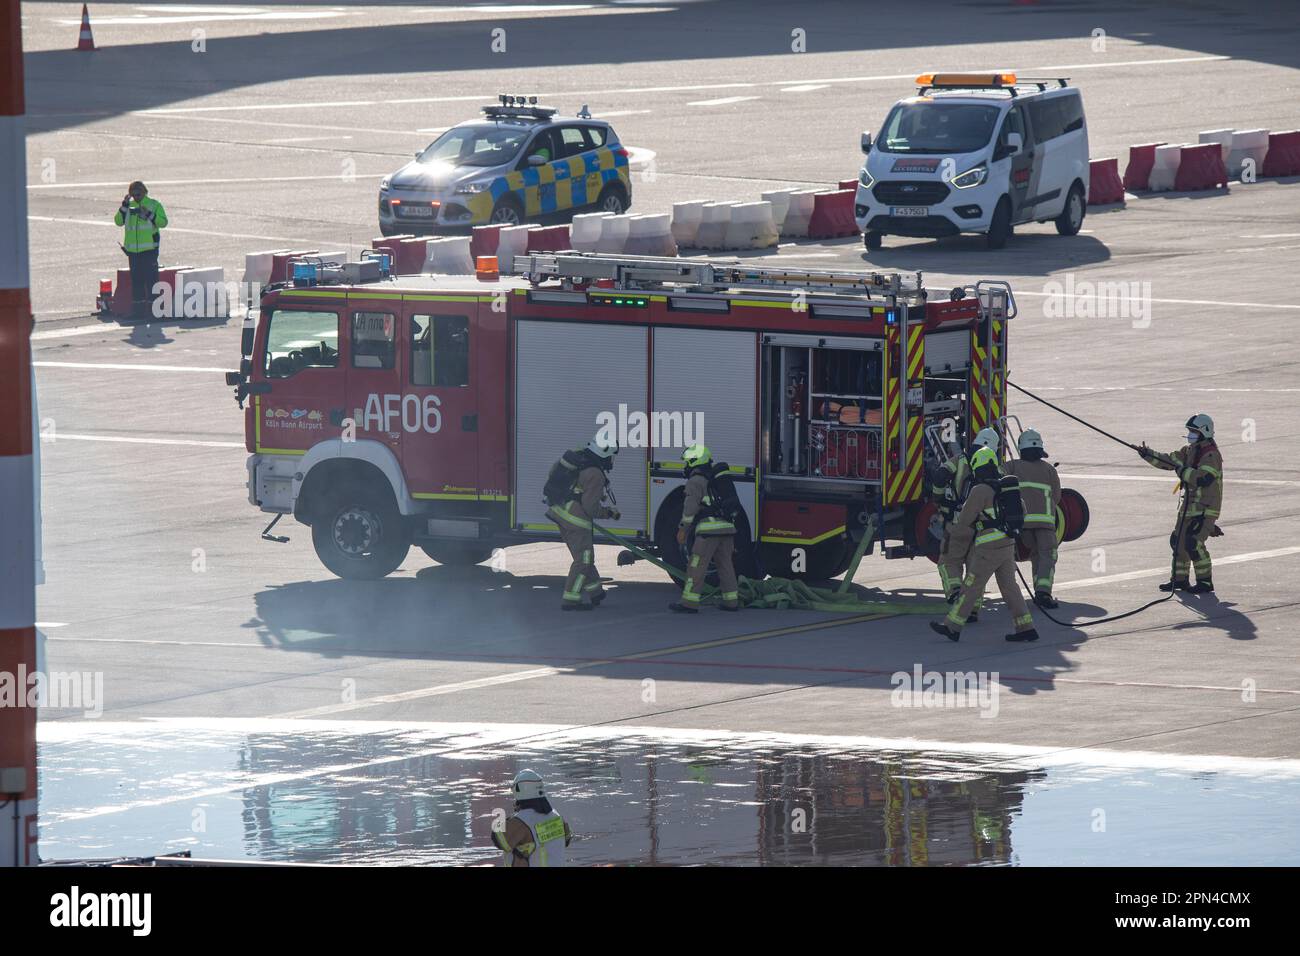 Hilfeleistungslöschgruppenfahrzeug bei der Notfallübung der Werkfeuerwehr, der Feuerwehr Köln und den Hilfsorganisationen am Flughafen Köln/Bonn. Im R Foto Stock